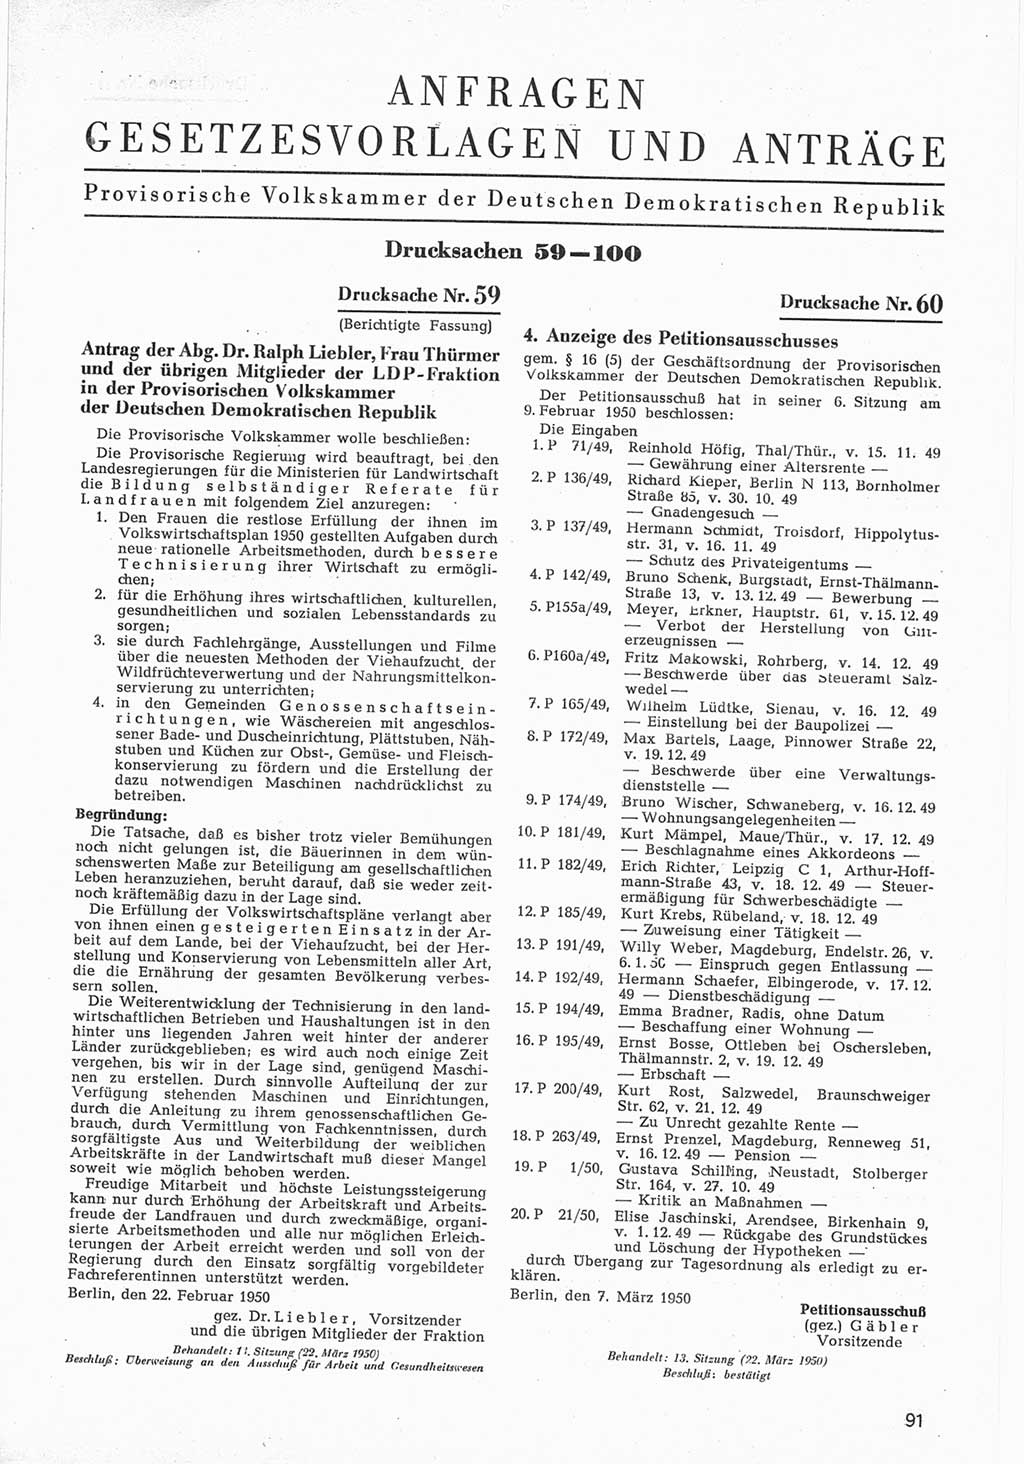 Provisorische Volkskammer (VK) der Deutschen Demokratischen Republik (DDR) 1949-1950, Dokument 693 (Prov. VK DDR 1949-1950, Dok. 693)